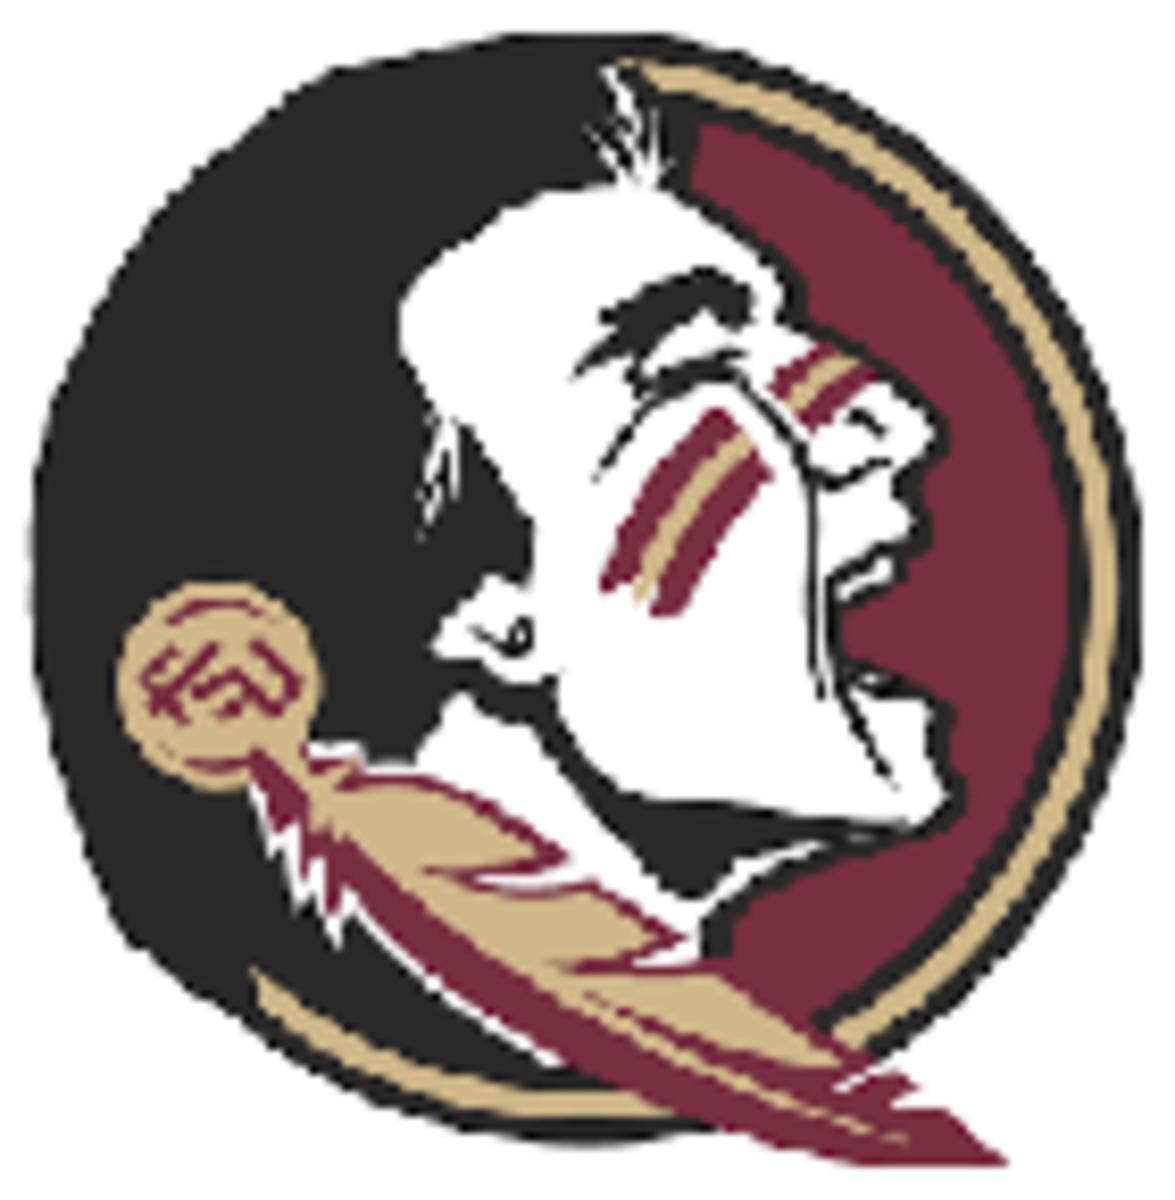 Florida State logo